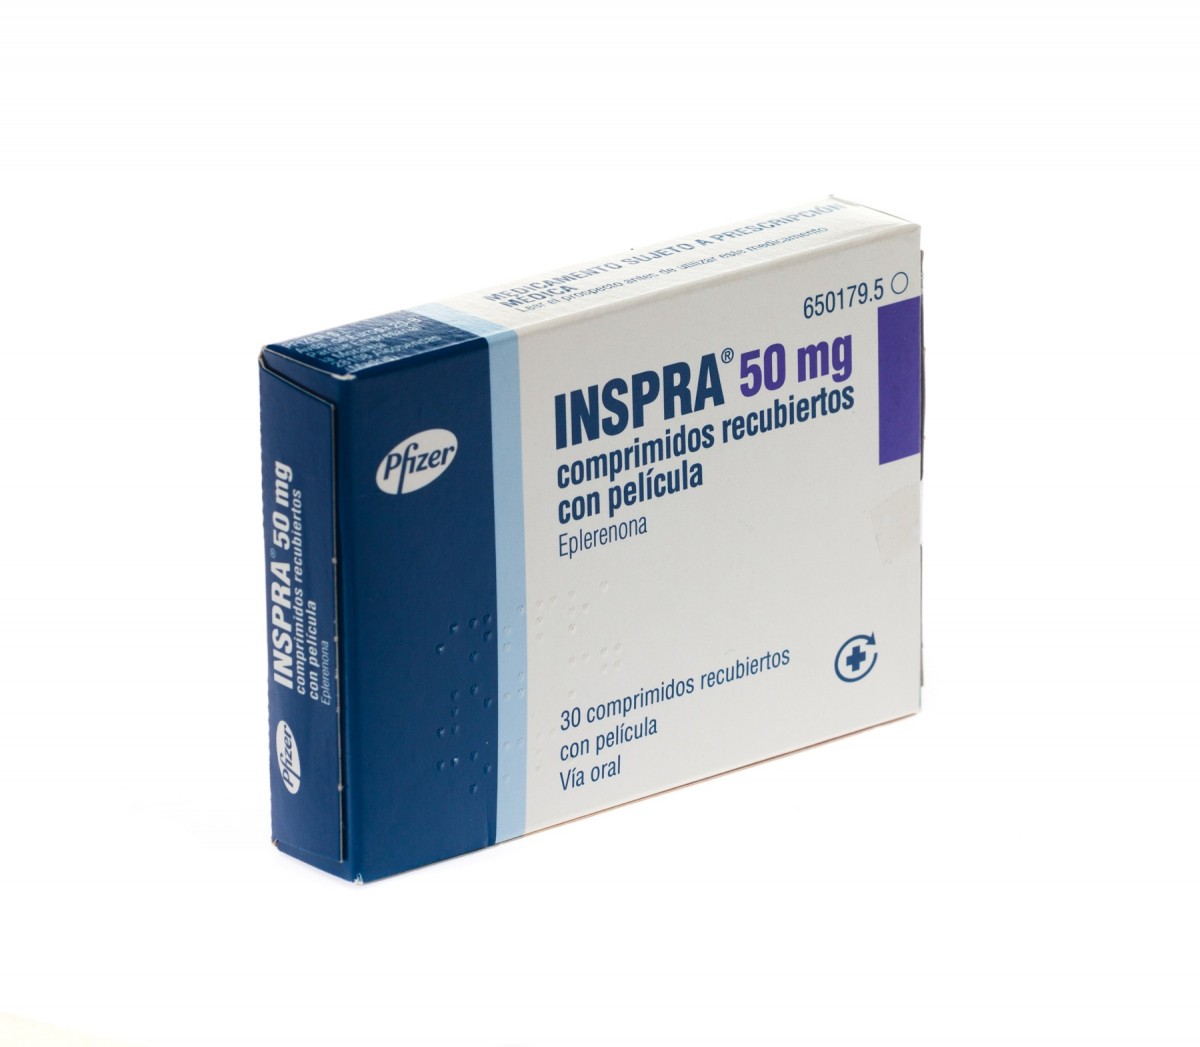 INSPRA 50 mg COMPRIMIDOS RECUBIERTOS CON PELICULA, 200 comprimidos fotografía del envase.